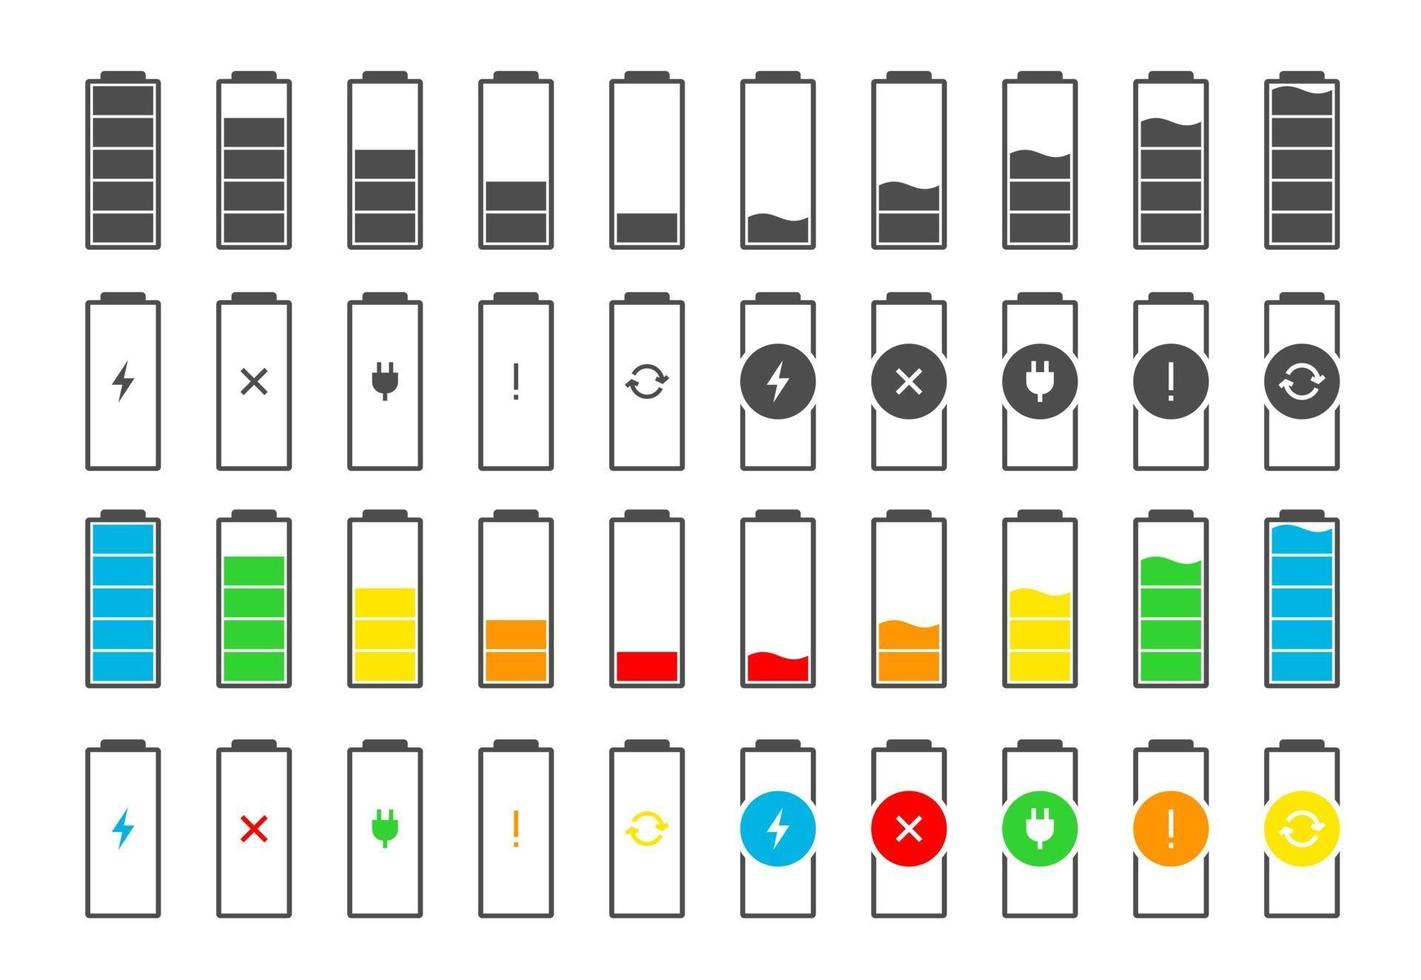 conjunto de ícones coloridos do indicador de carga da bateria. nível de carga potência total de baixo a alto plugue elétrico e relâmpago. ilustração do eps do vetor do status da energia alcalina dos gadgets no fundo branco